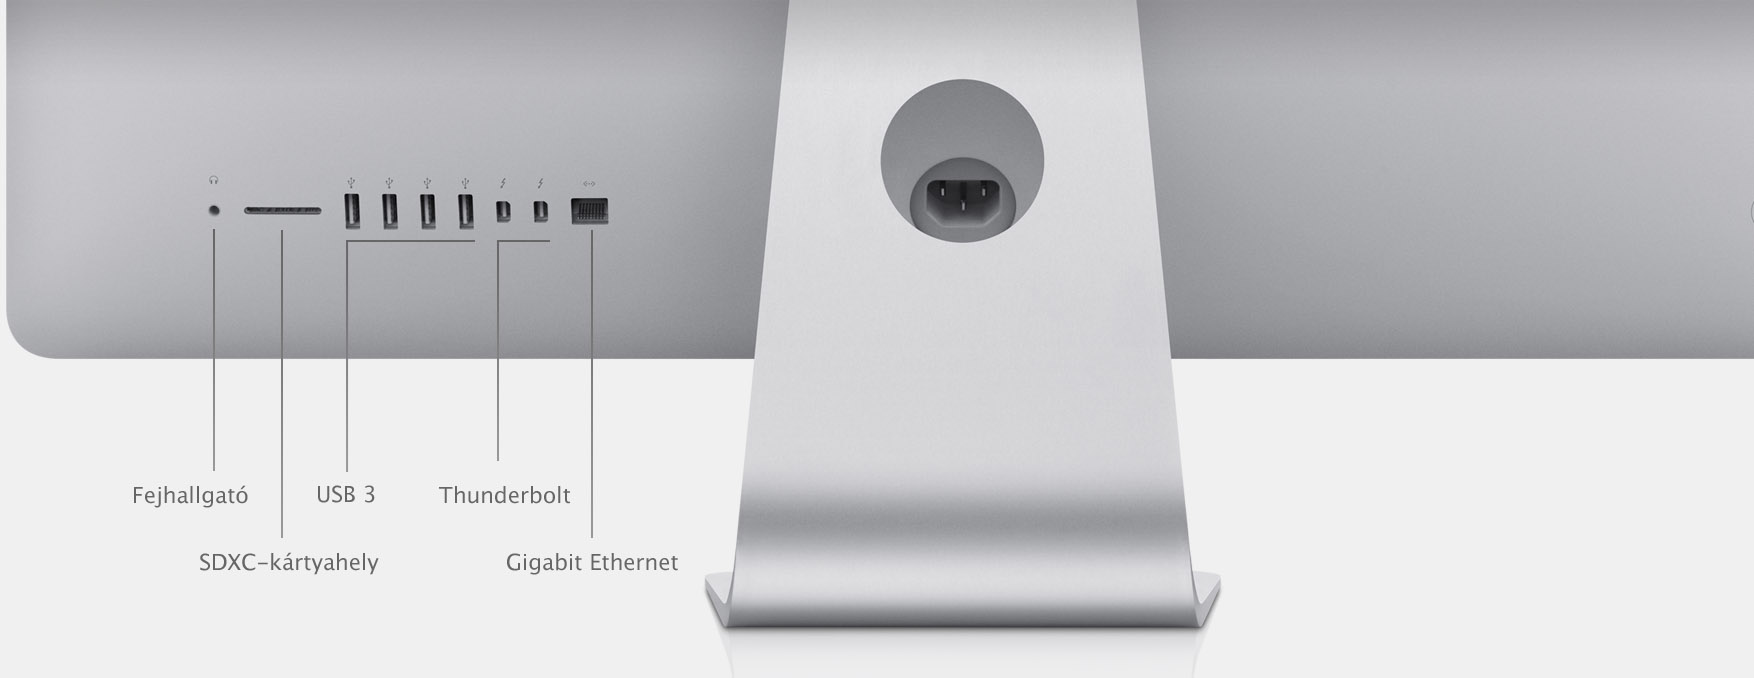 iMac (21.5-inch, Late 2013) - Technikai adatok (HU)